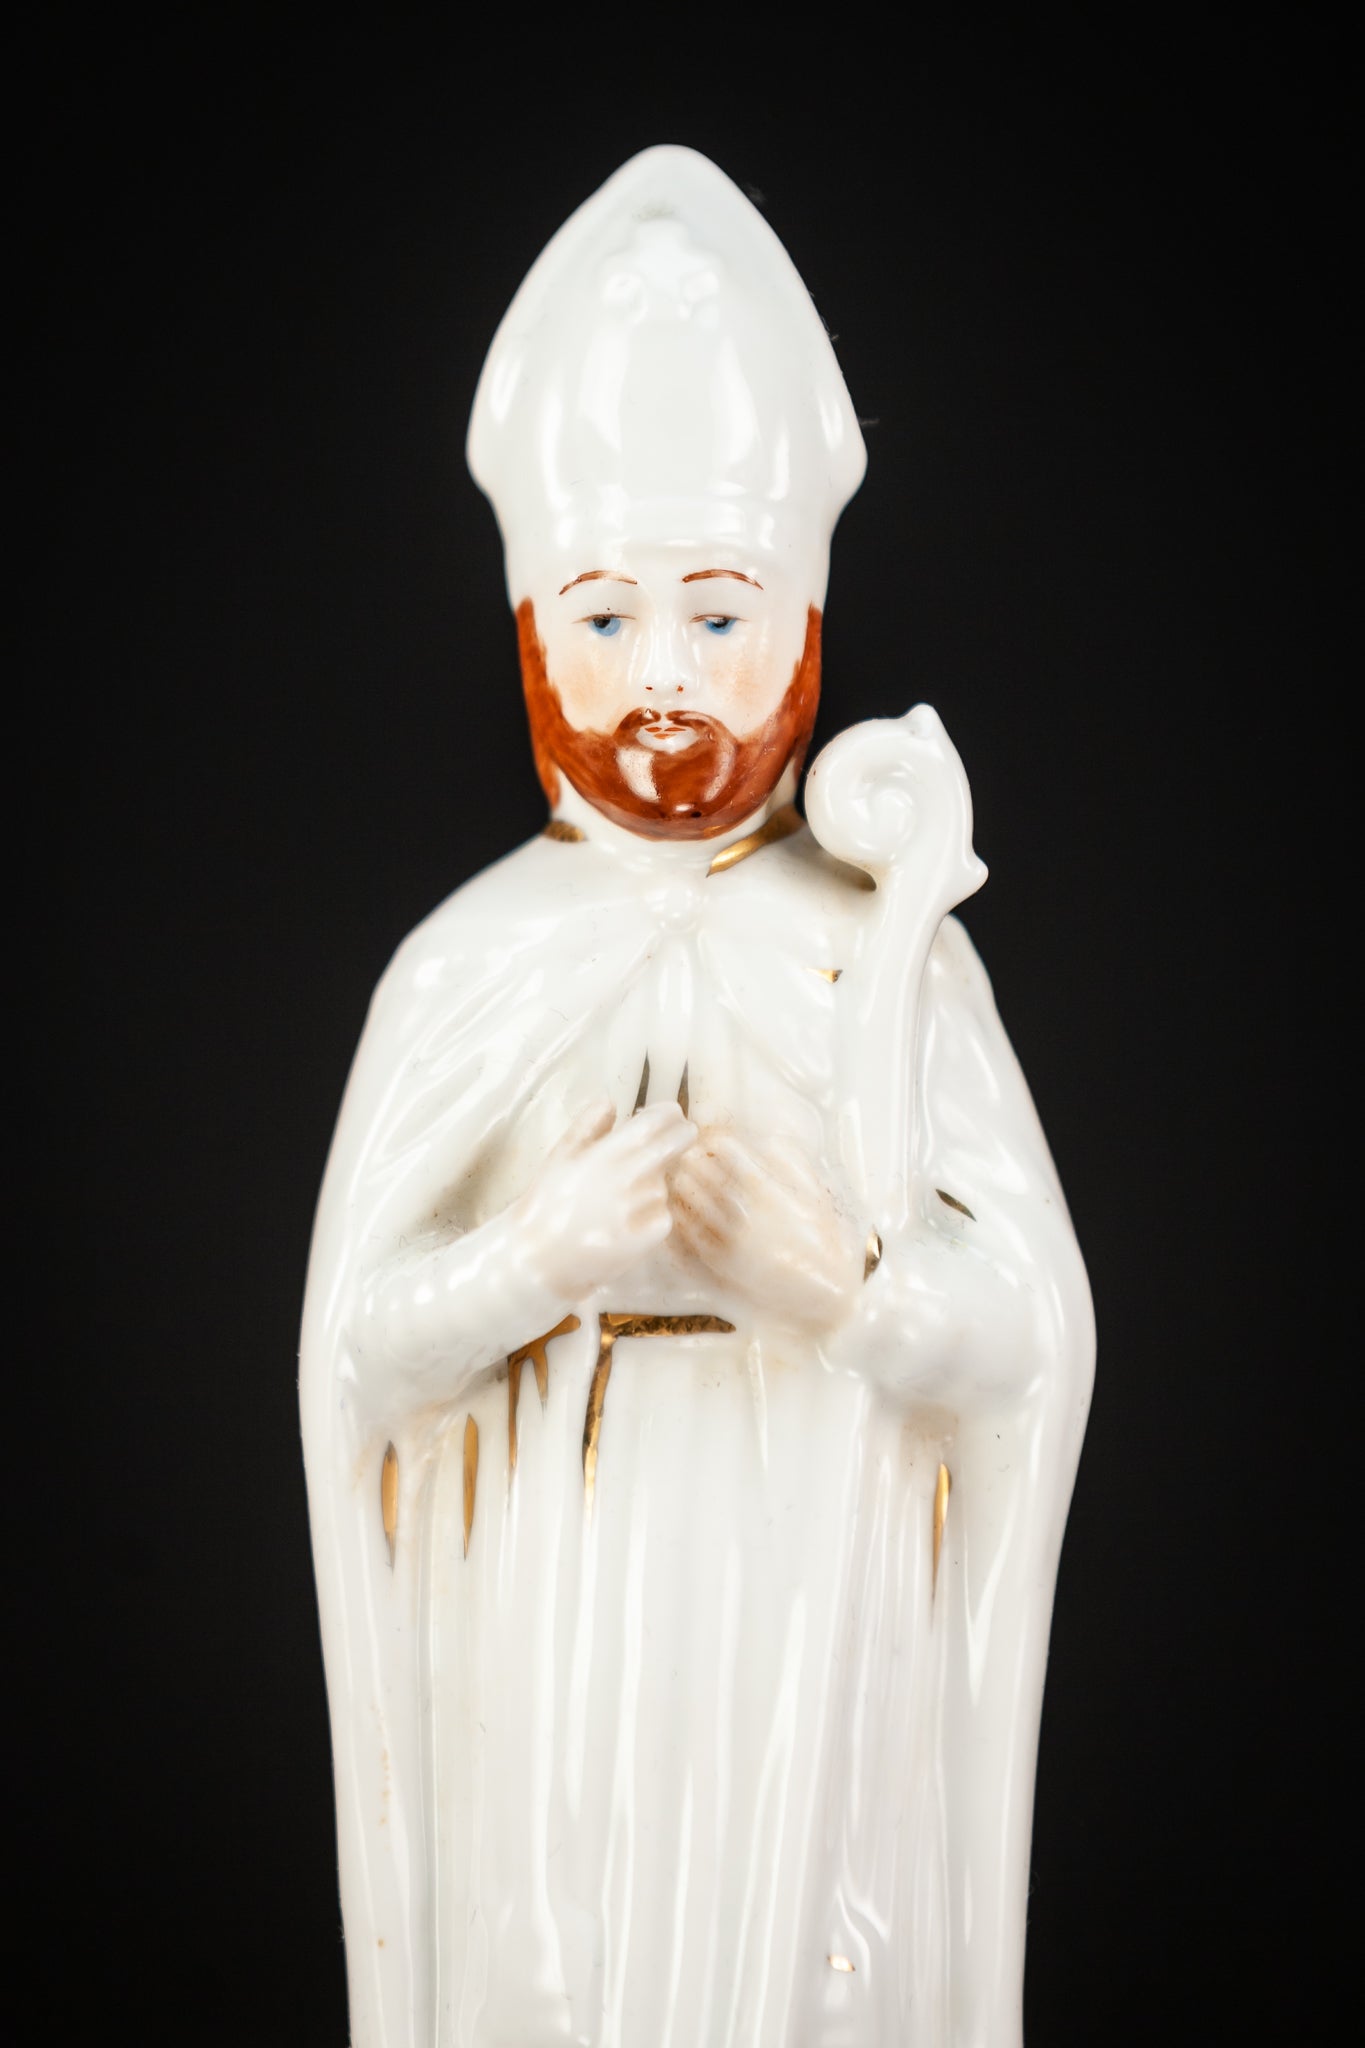 St Nicholas Porcelain Statue 7.9”